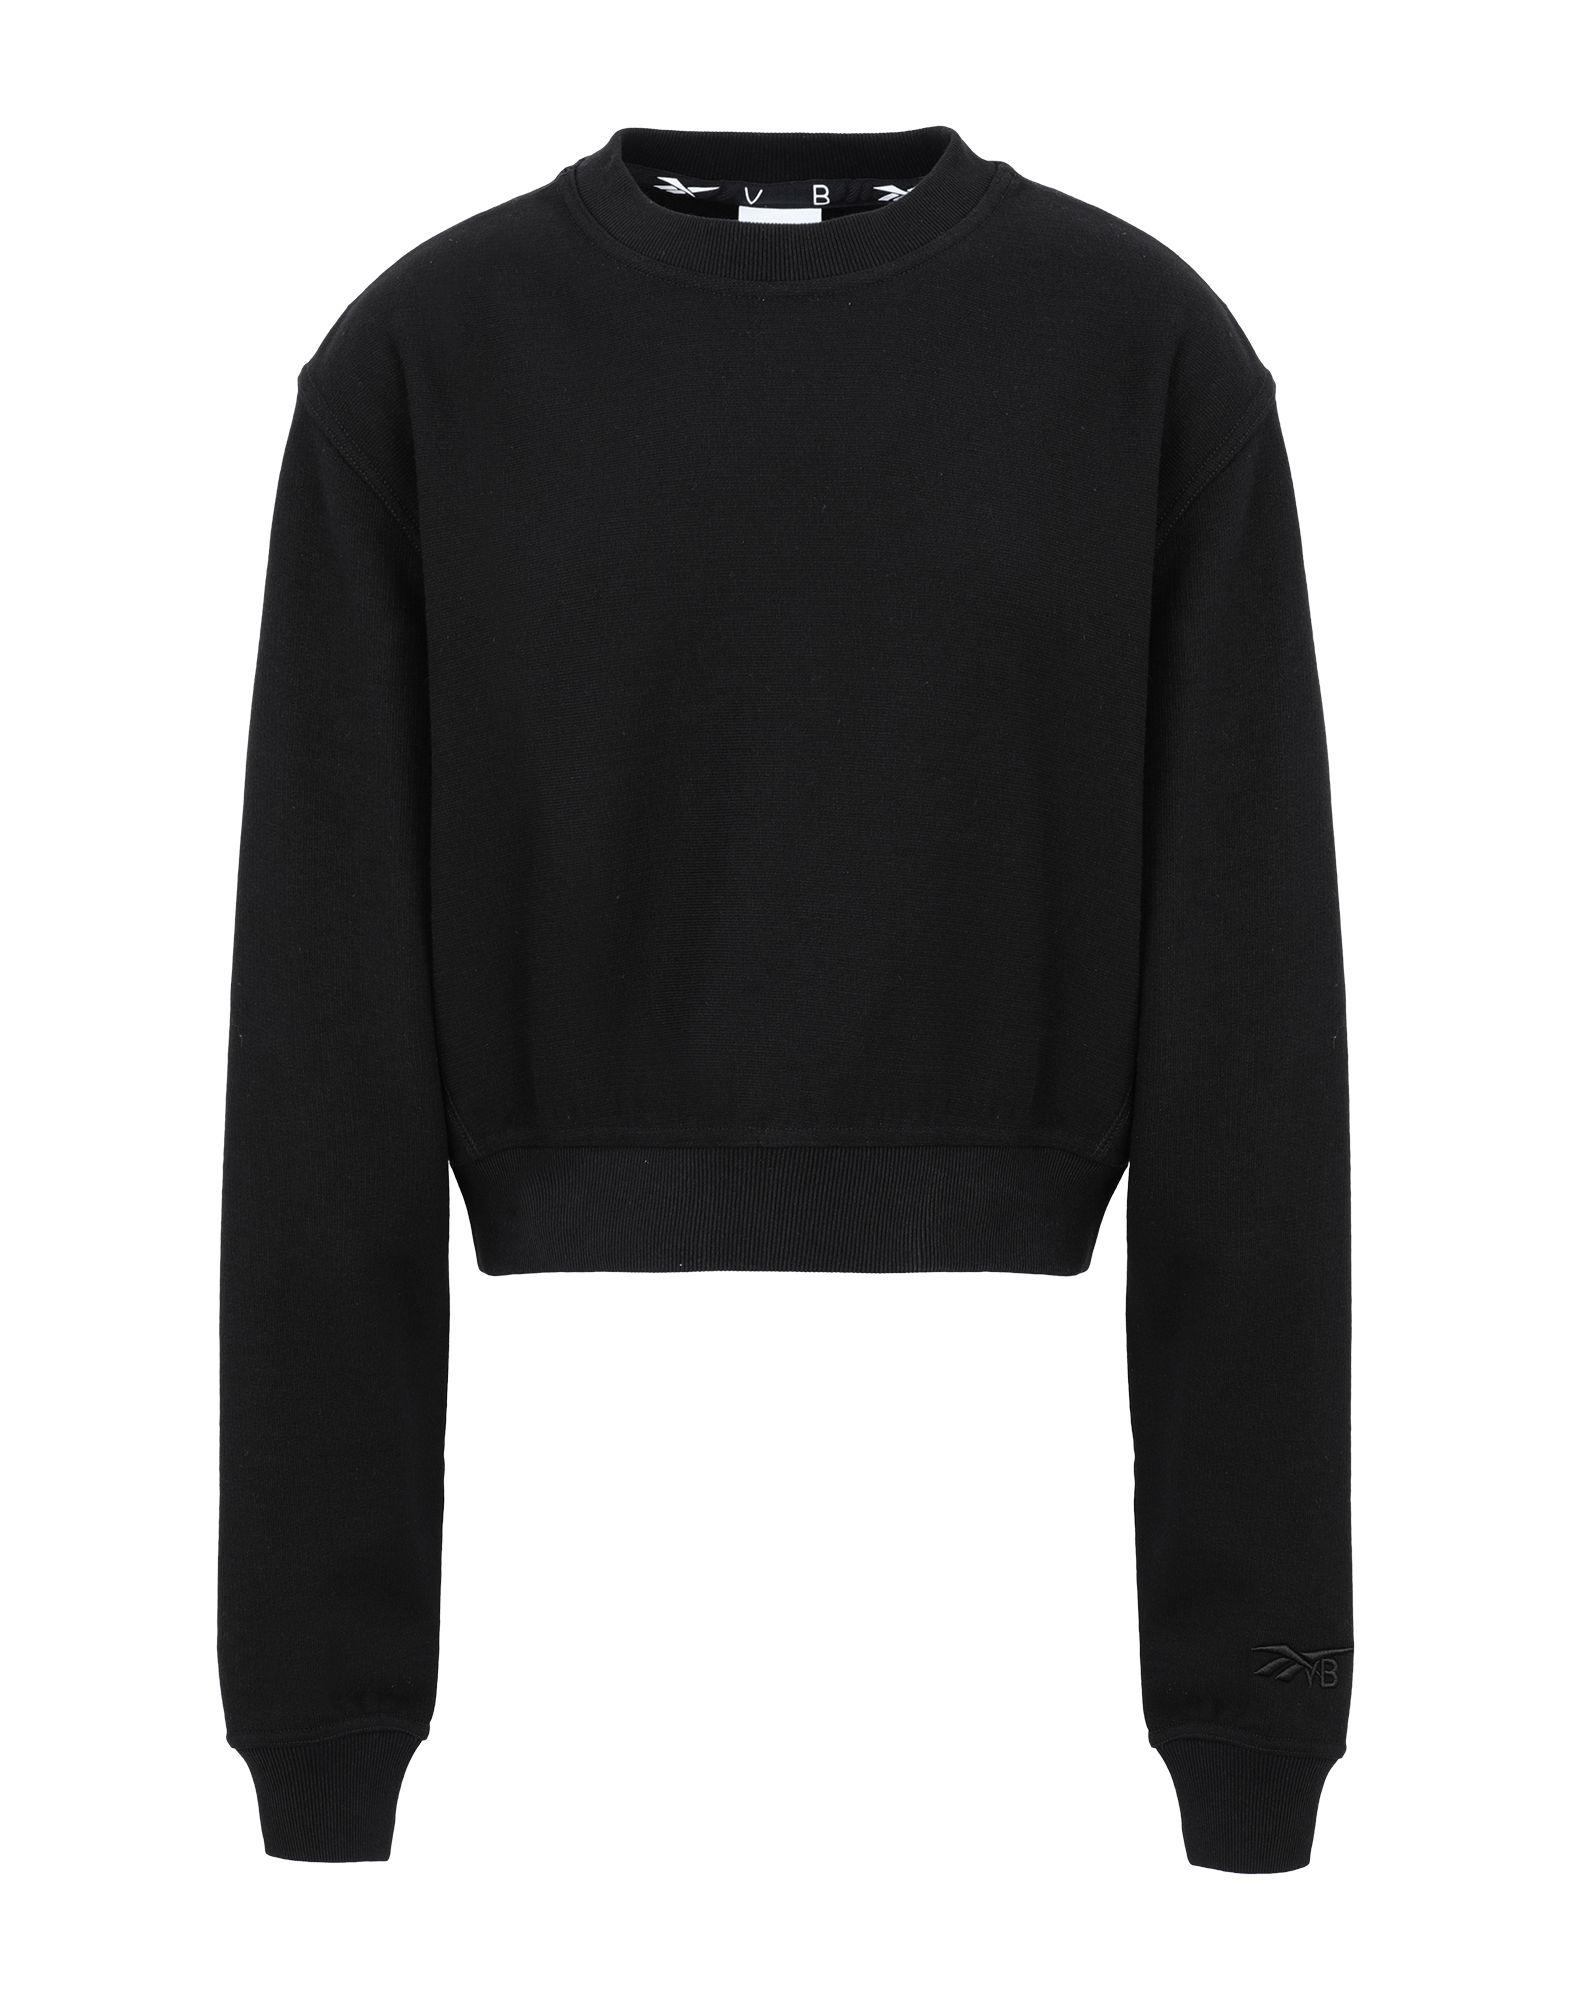 Reebok X Victoria Beckham Sweatshirt in Black - Lyst